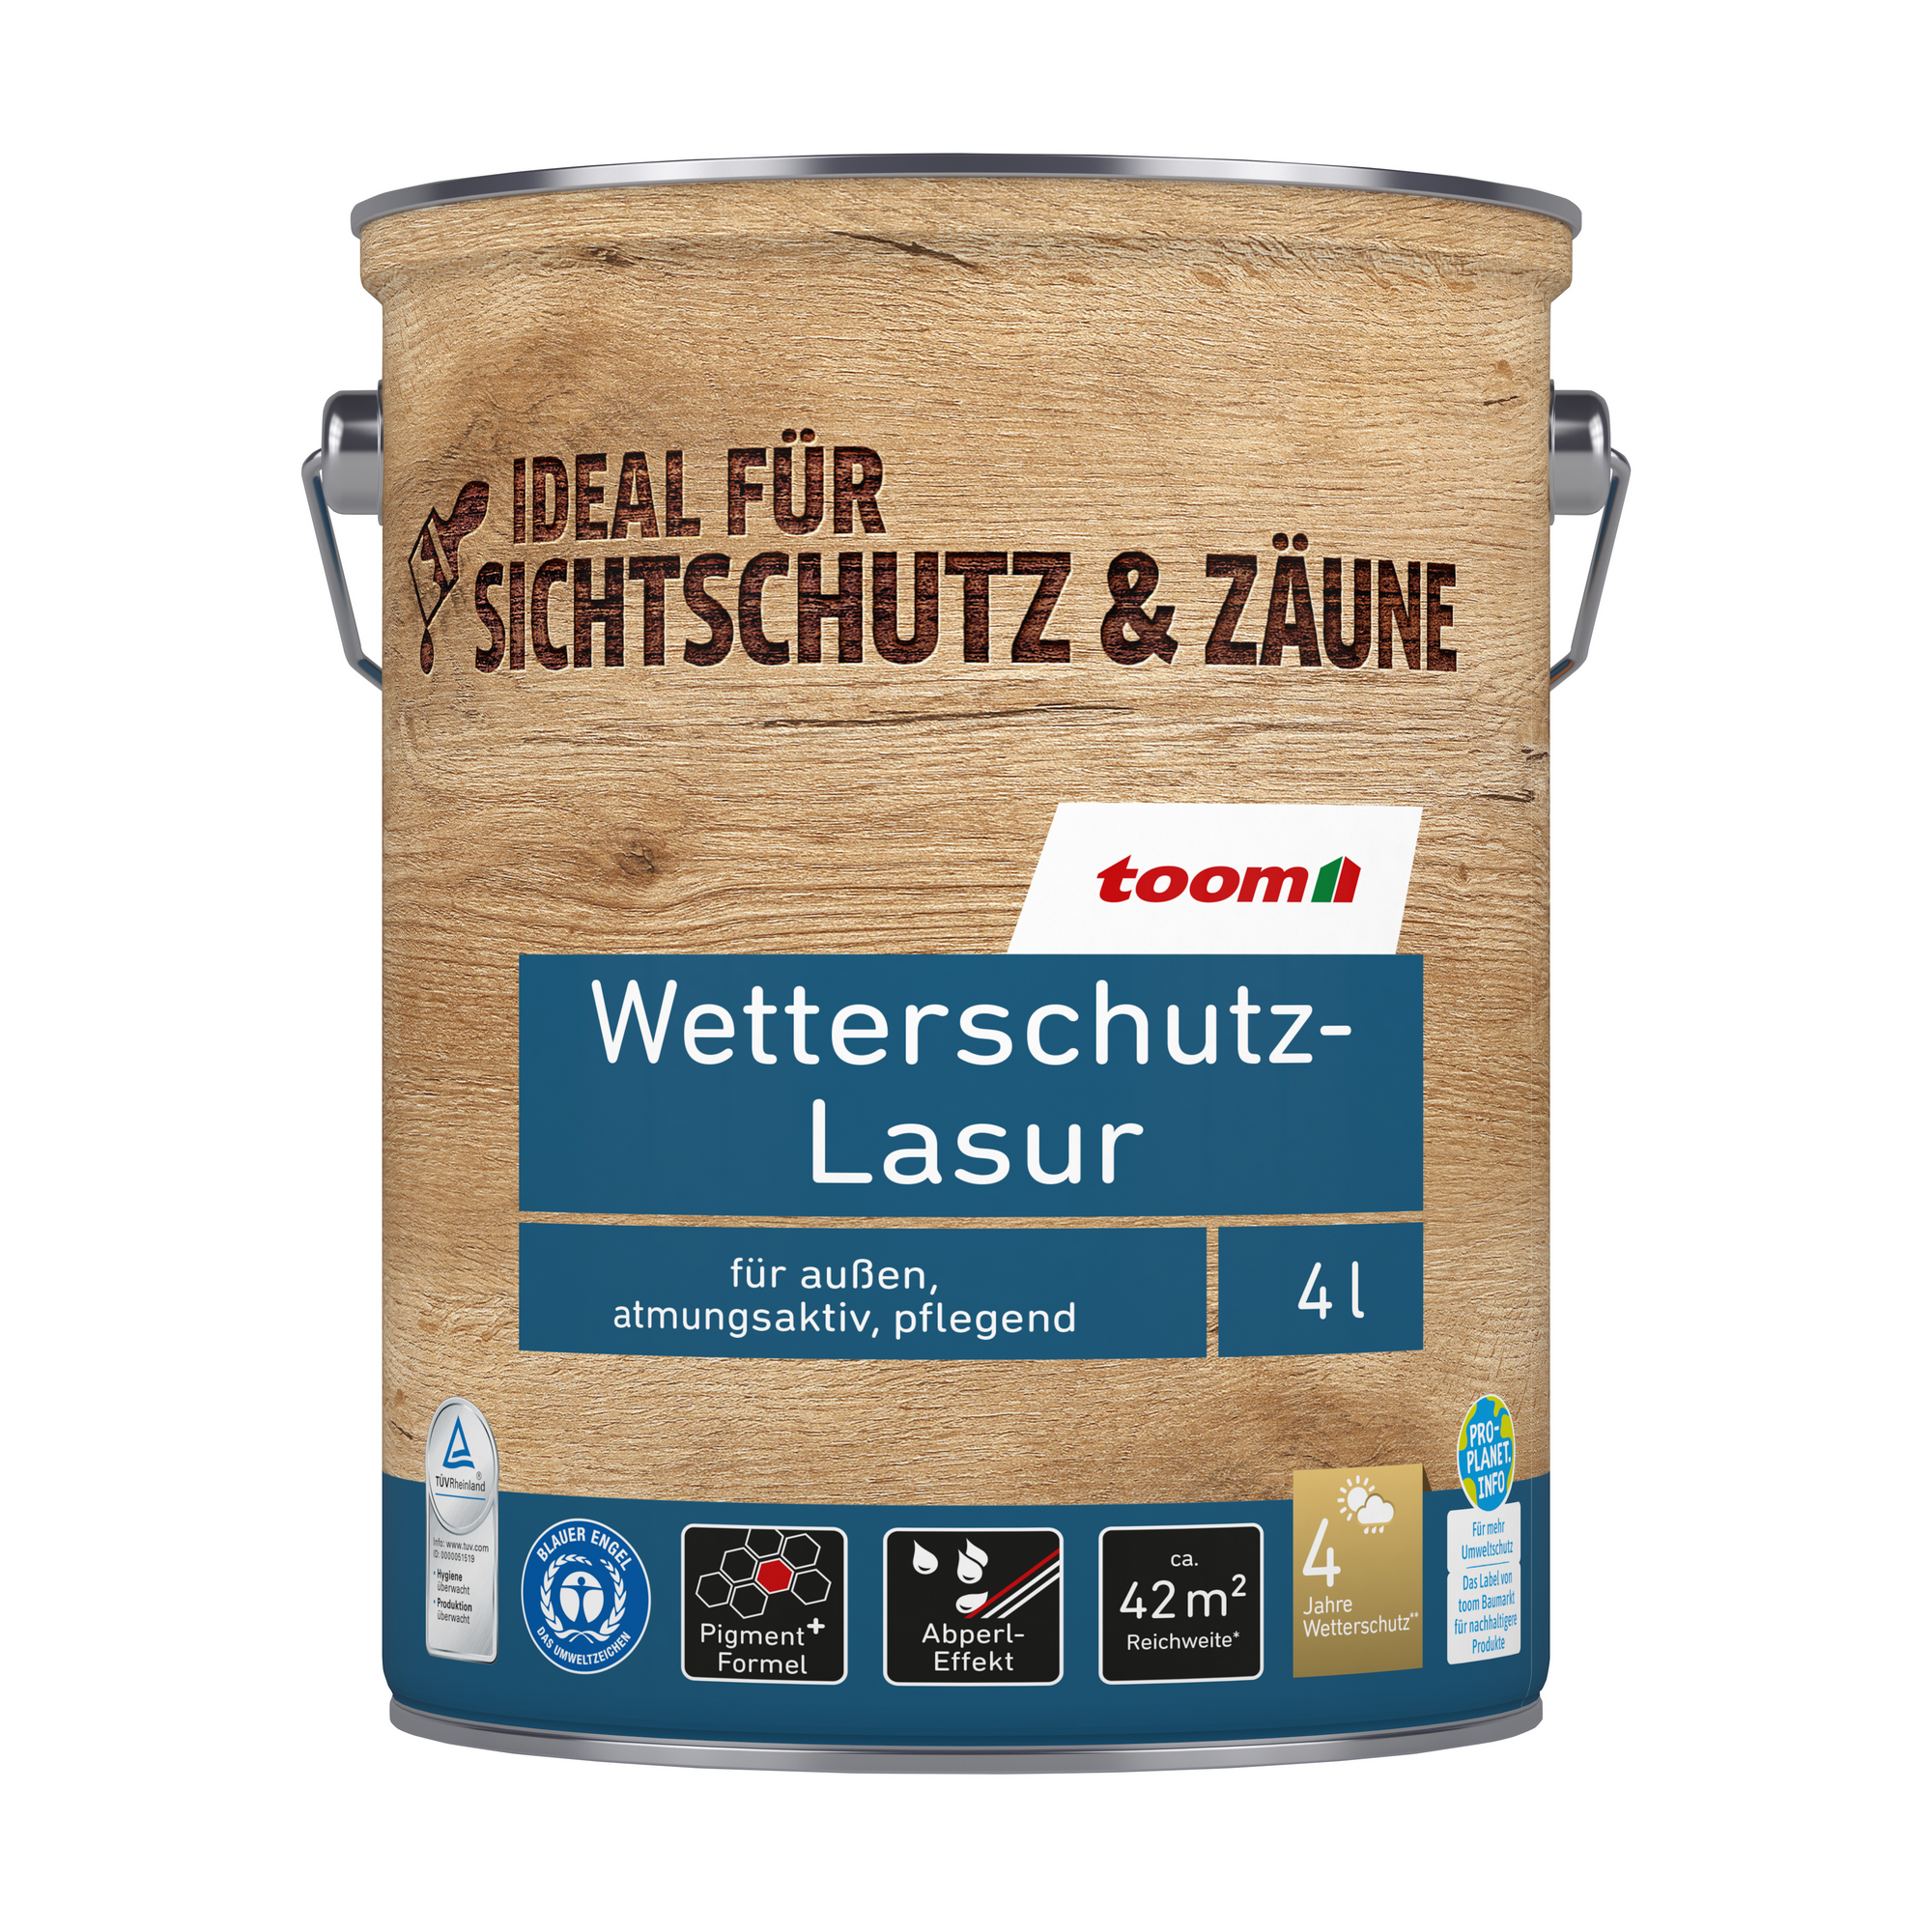 Wetterschutz-Lasur nussbaumfarben dunkel 4 l + product picture